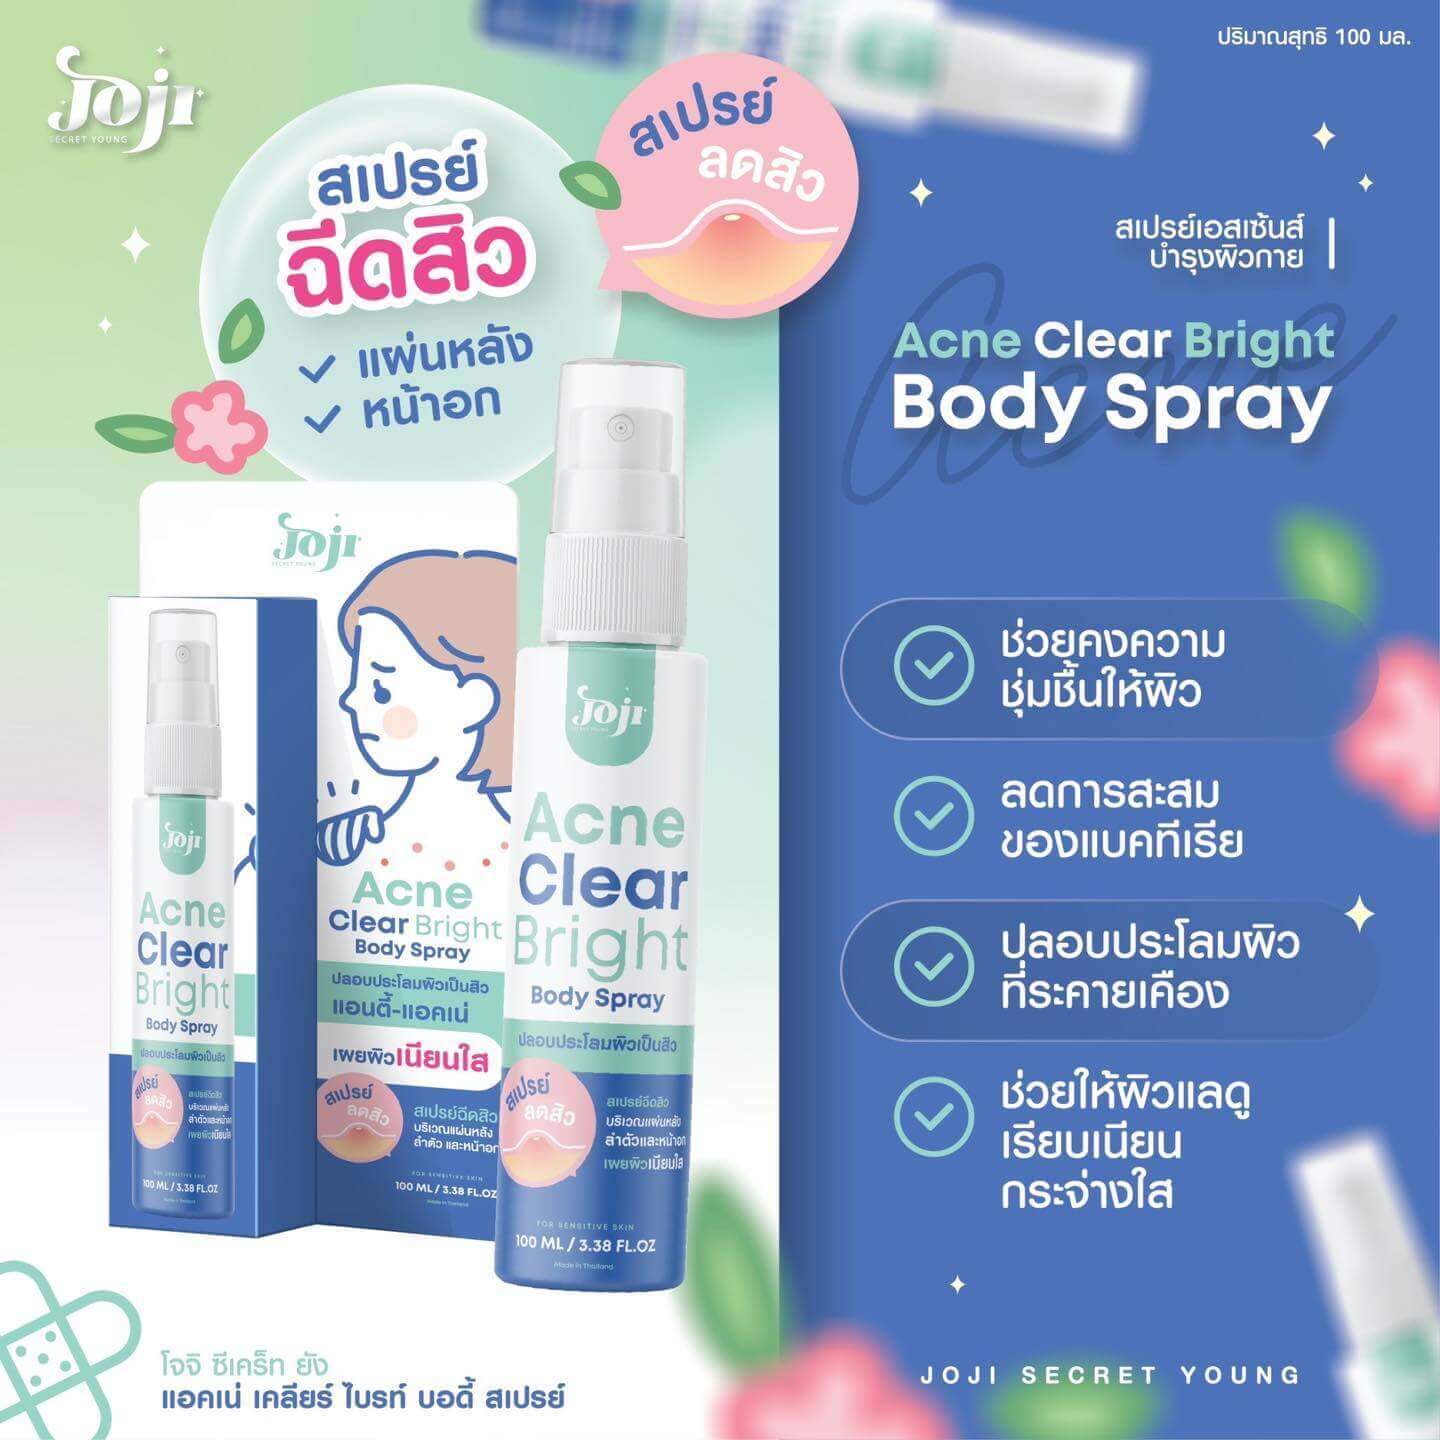  Acne Clear Bright Body Spray,Joji Secret Young, Acne Clear Bright ,สเปรย์กำจัดสิว,สิว